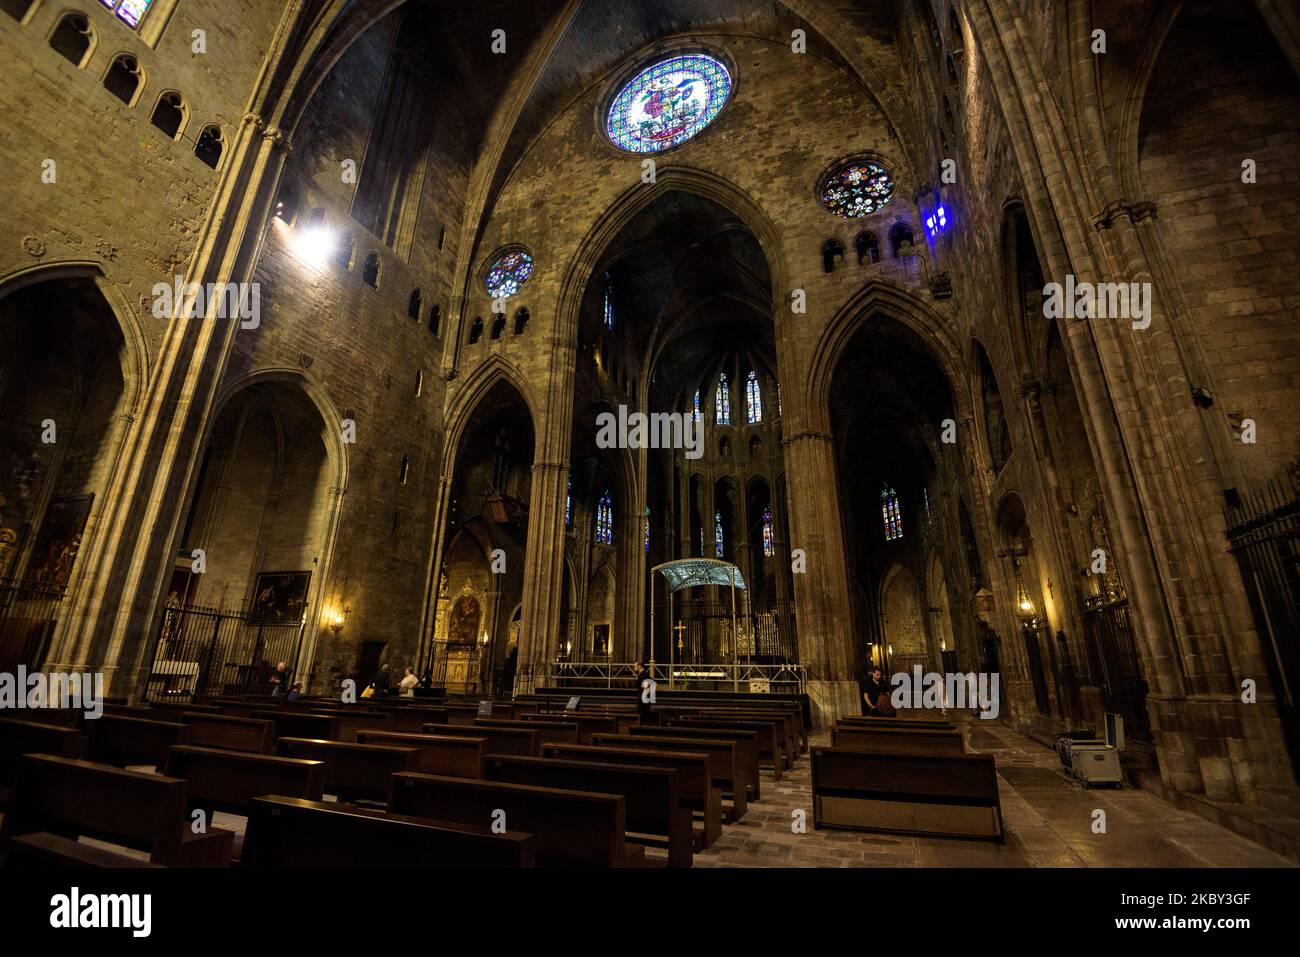 Interior of the Cathedral of Girona (Catalonia, Spain) ESP: Interior de la catedral de Gerona (Cataluña, España) FR: Intérieur de la cathédrale Gérone Stock Photo